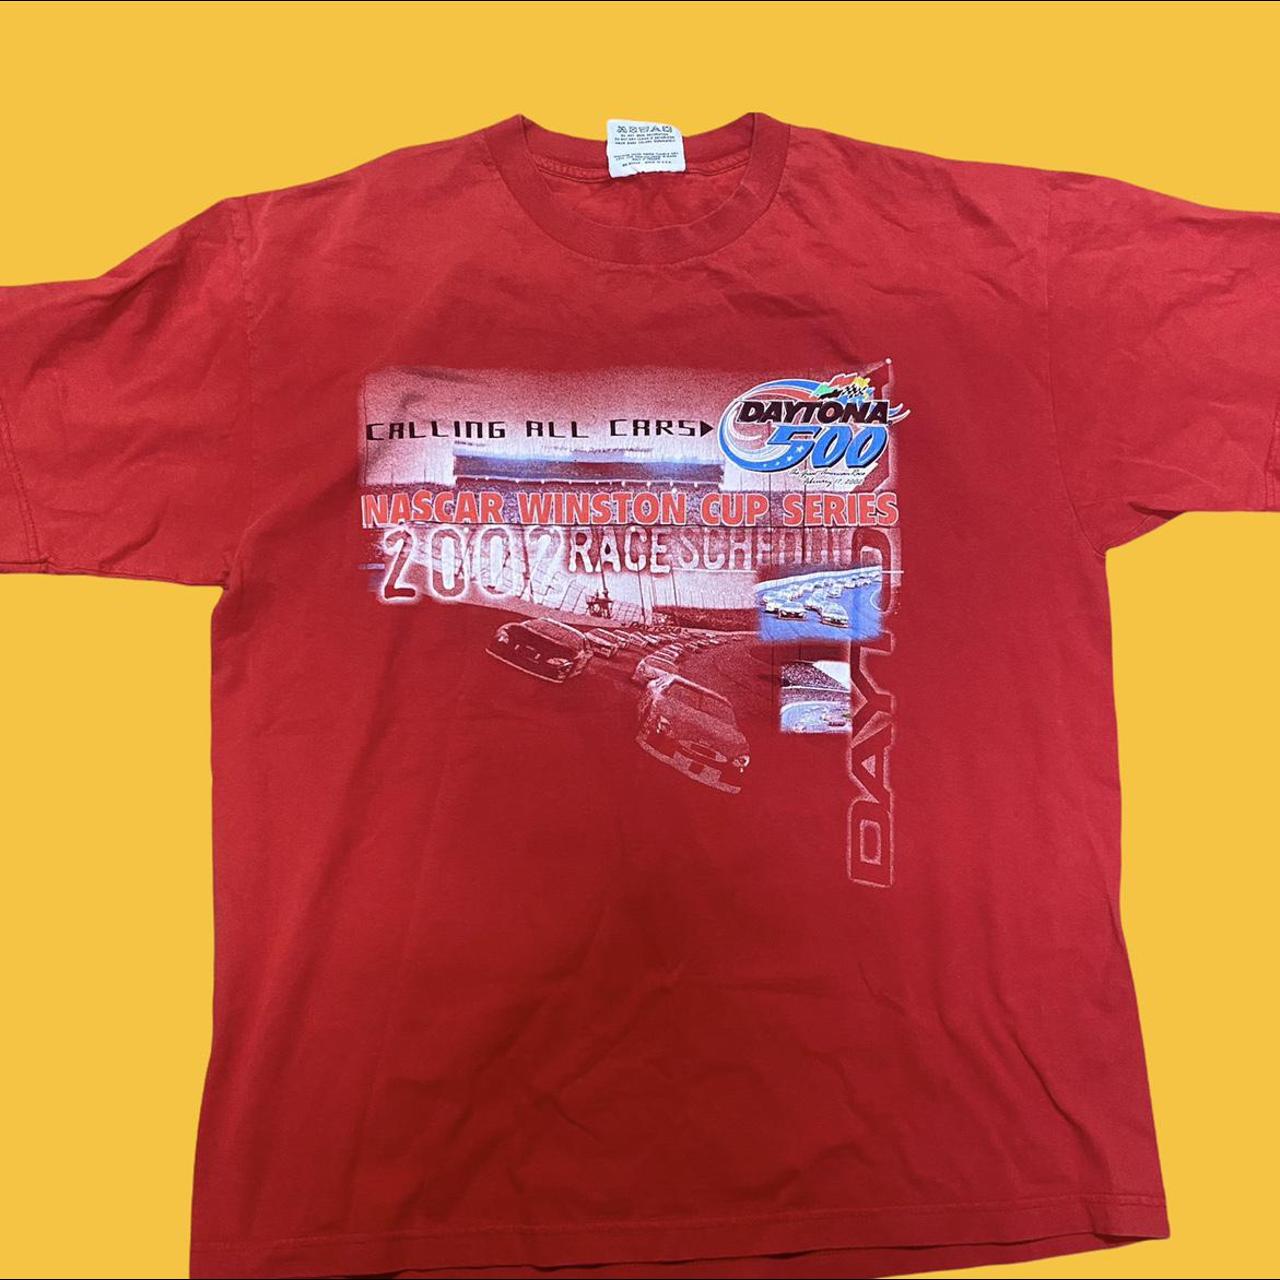 Modern 2002 Daytona 500 Nascar T-shirt P2P:... - Depop